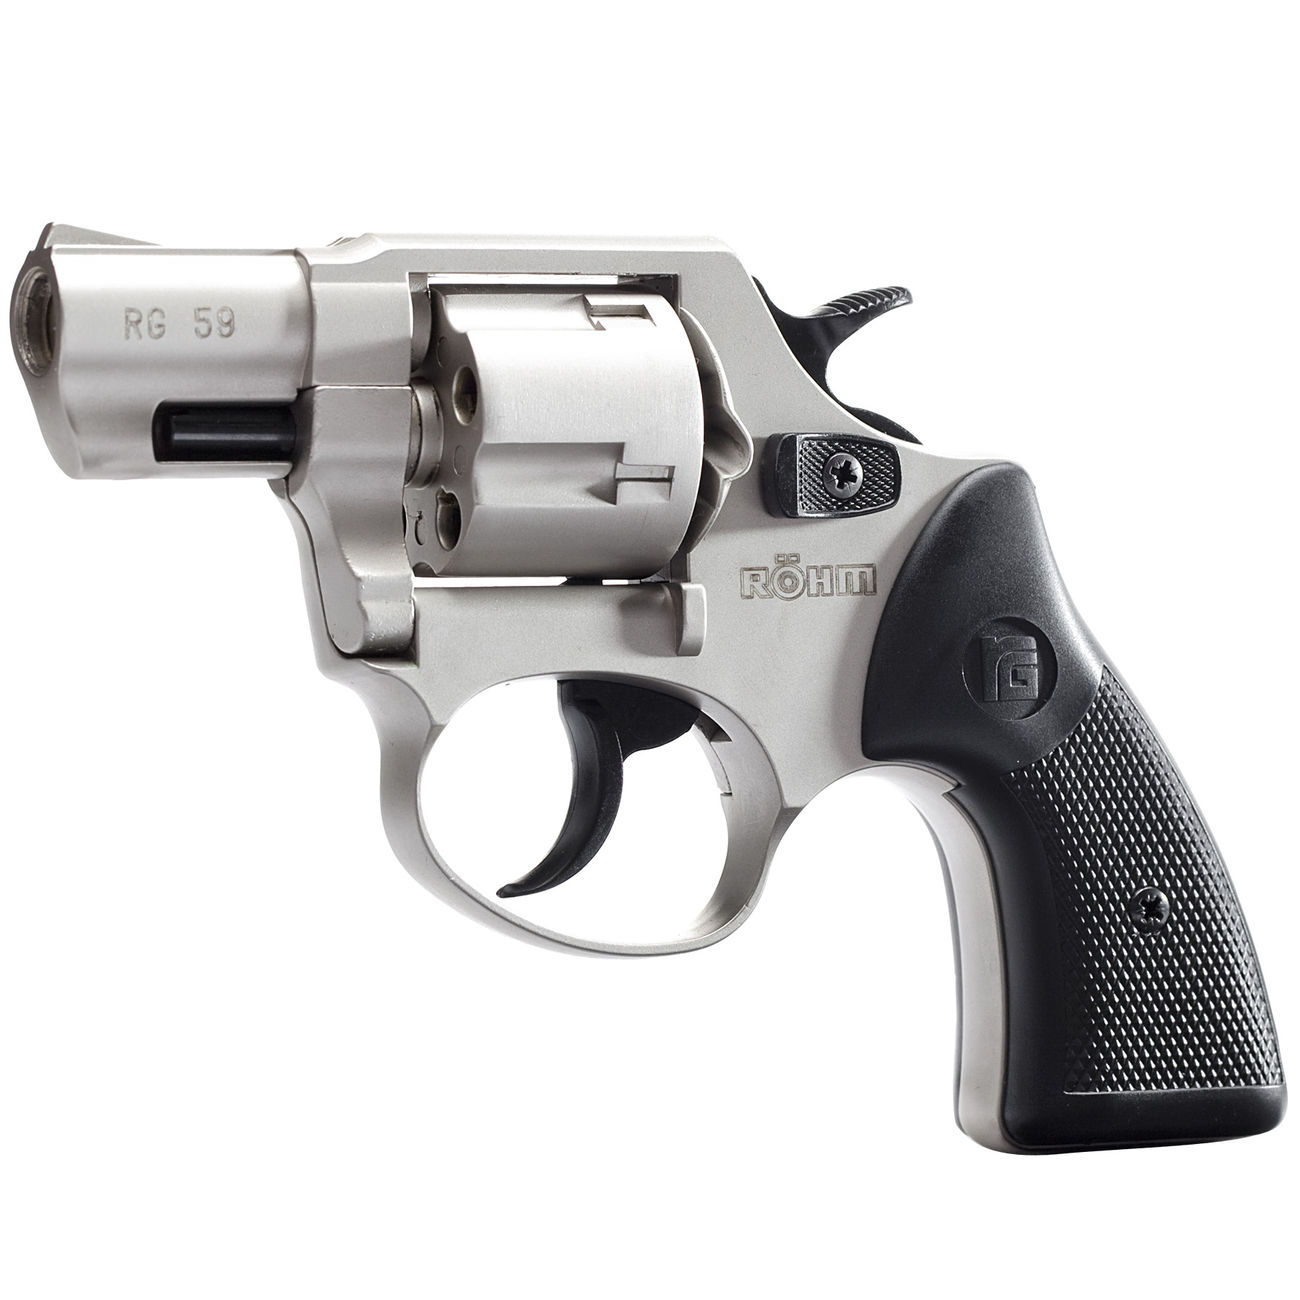 Rhm RG 59 Schreckschuss-Revolver 9mm R.K. alu chrome Bild 1